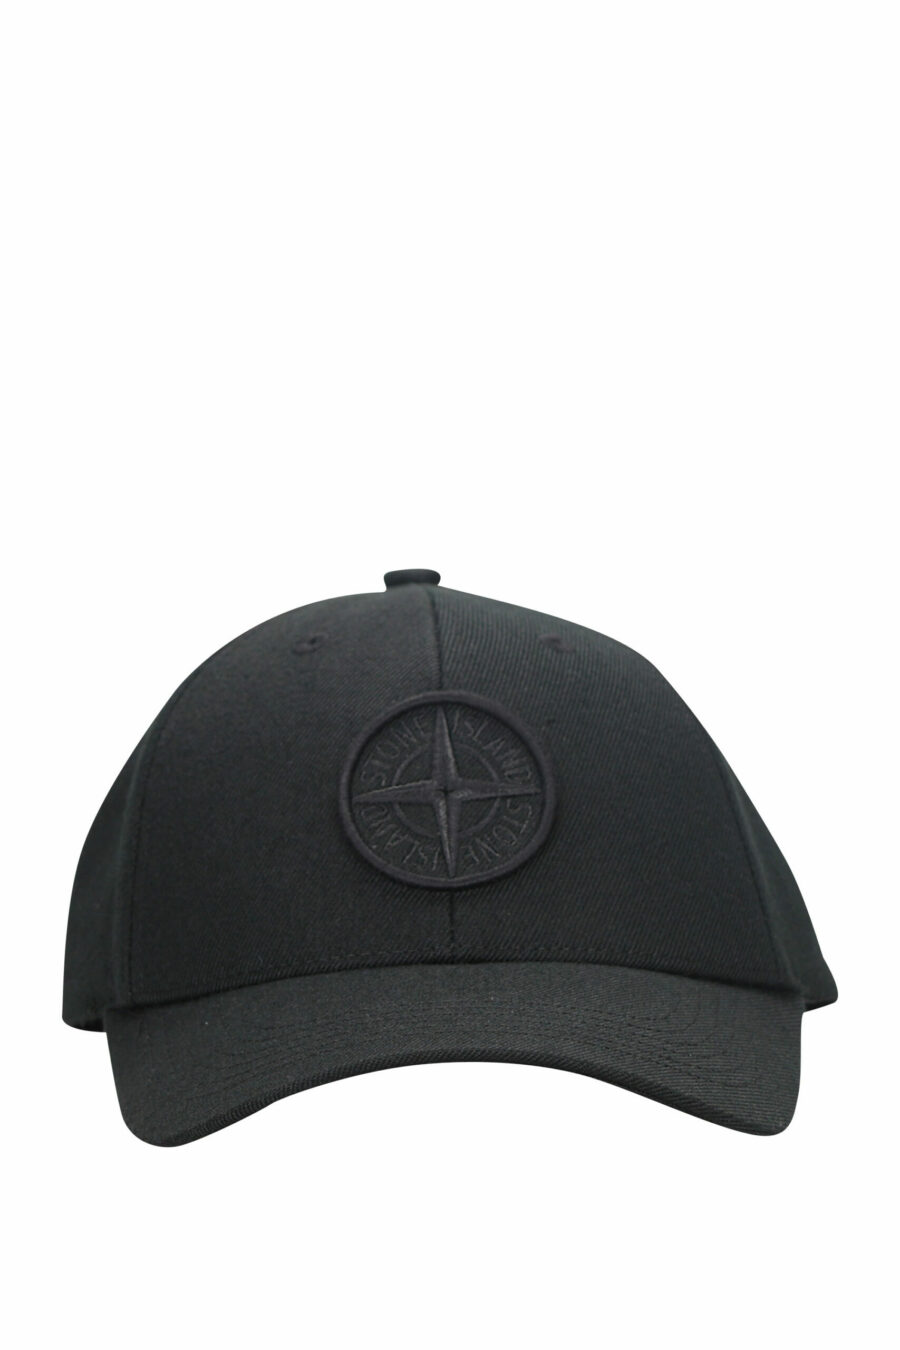 Schwarze Kappe mit geprägtem, gesticktem Logo - 8052572734557 skaliert